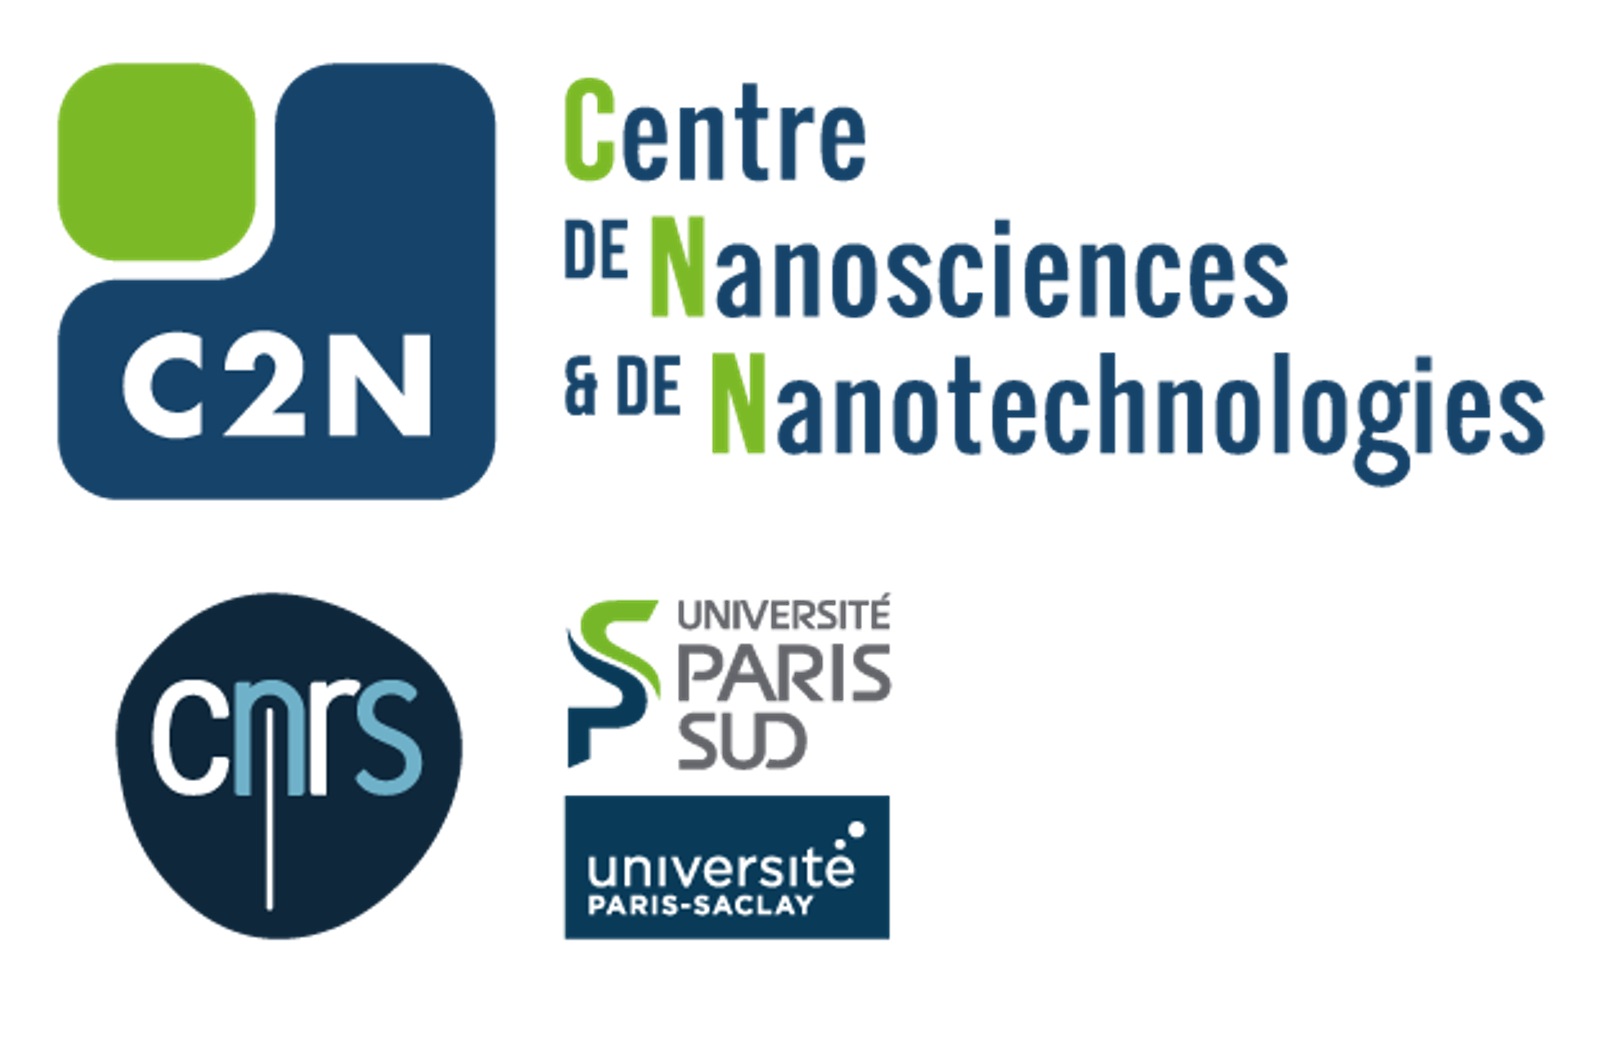 C2N Centre de Nanosciences et de Nanotechnologies